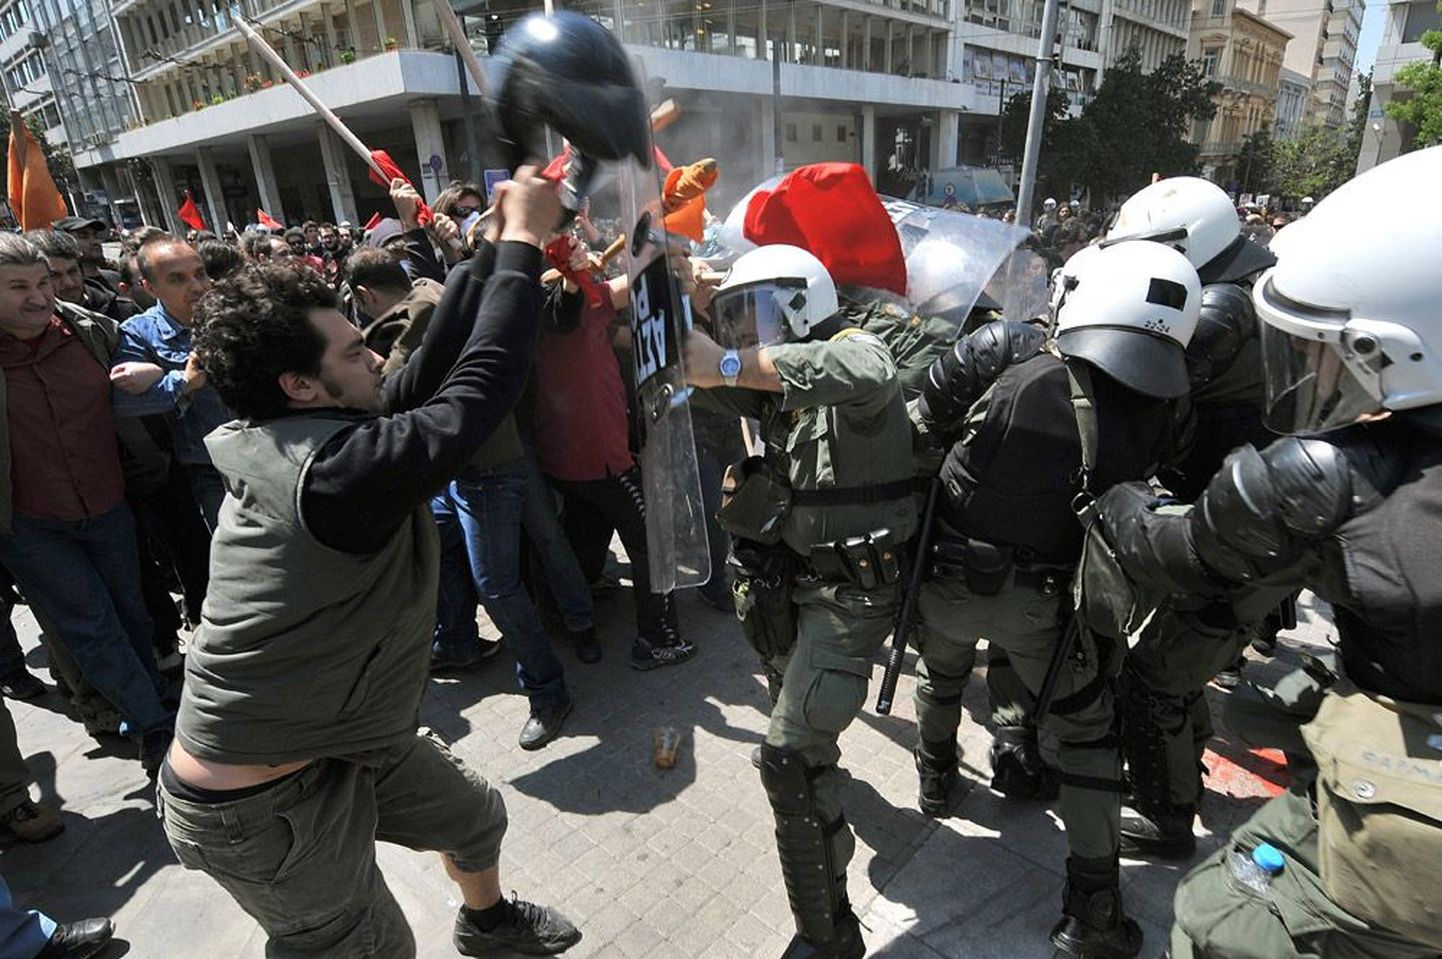 Kreeka pealinnas Ateenas on meeleavaldused ja kokkupõrked politseiga muutunud peaaegu igapäevaseks. Kreeklased pole rahul valitsuse kärpeplaanidega.